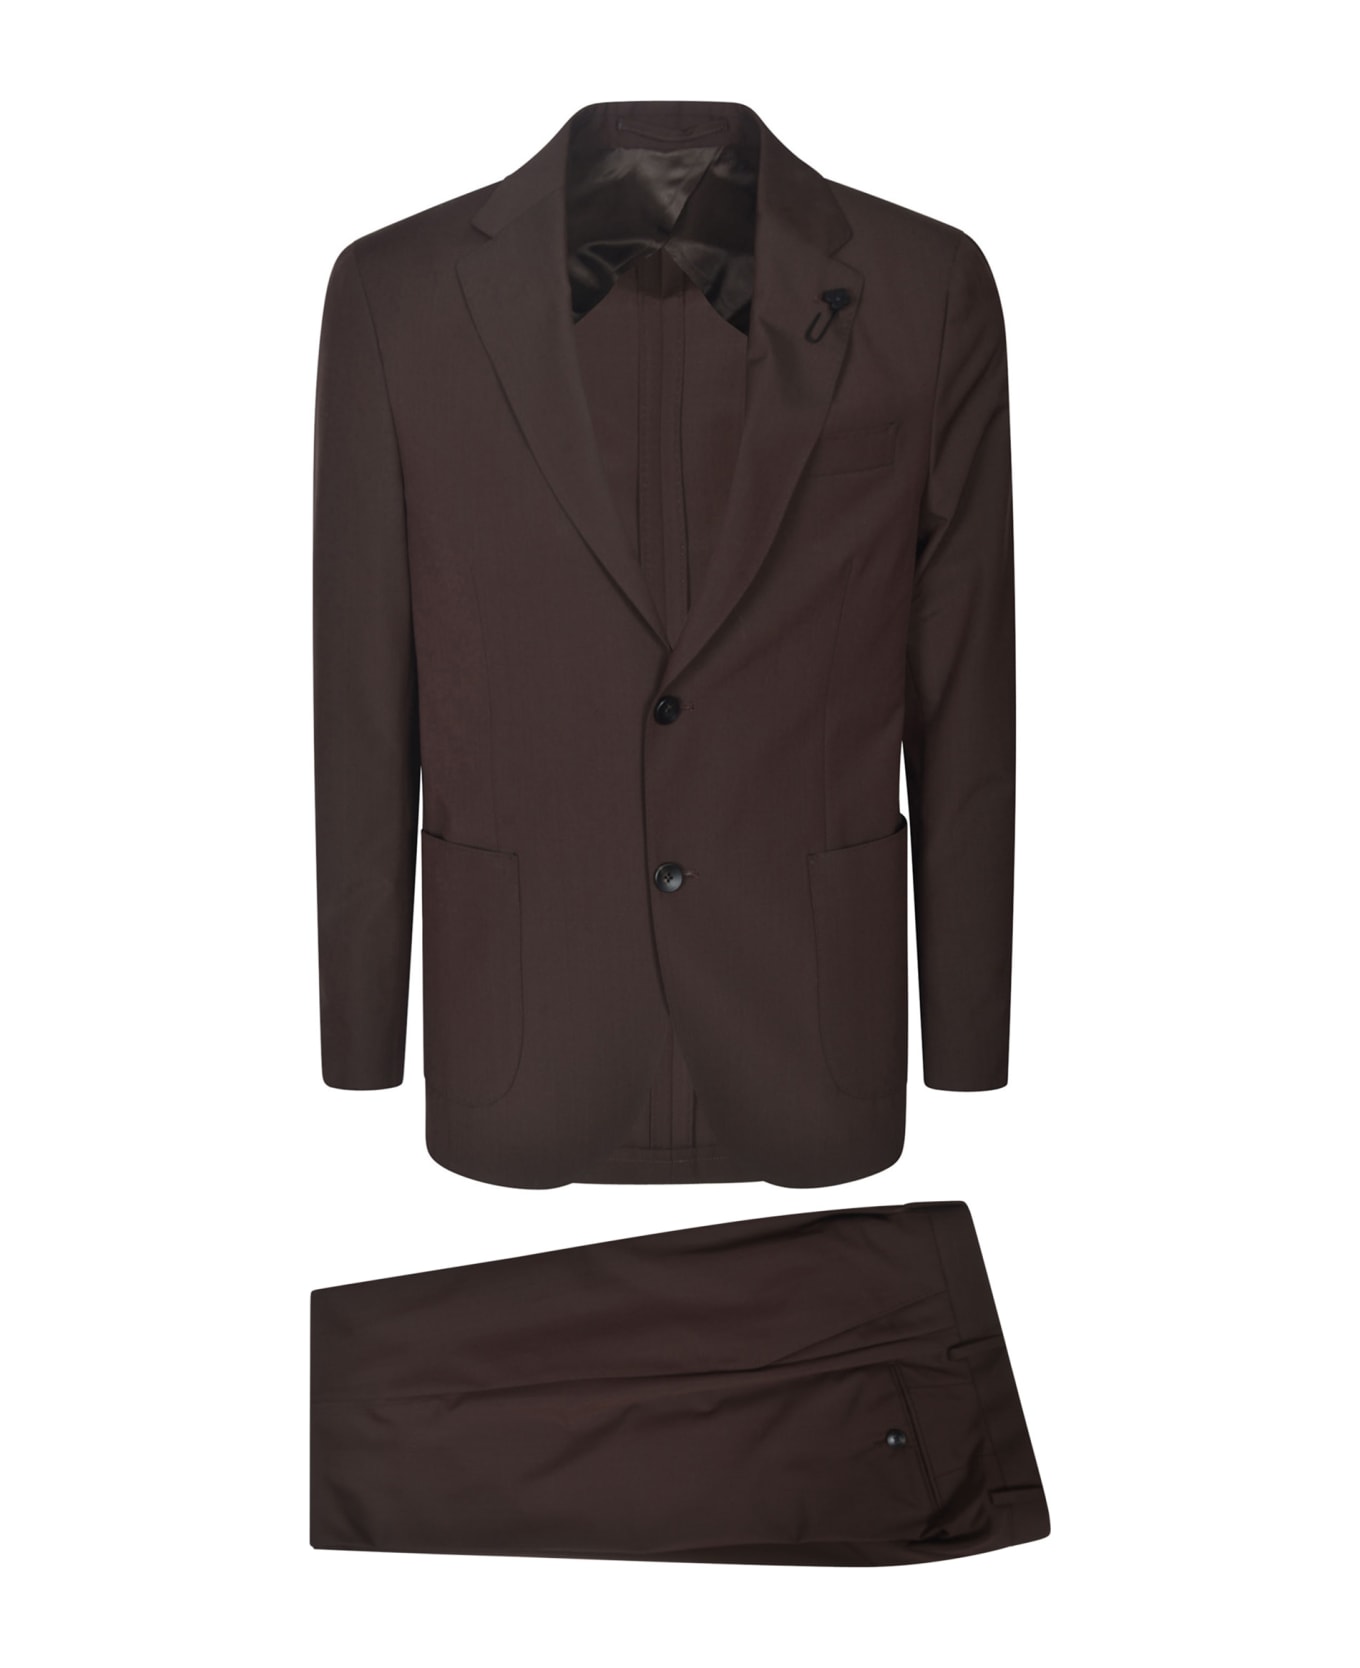 Lardini Patched Pocket Regular Plain Suit